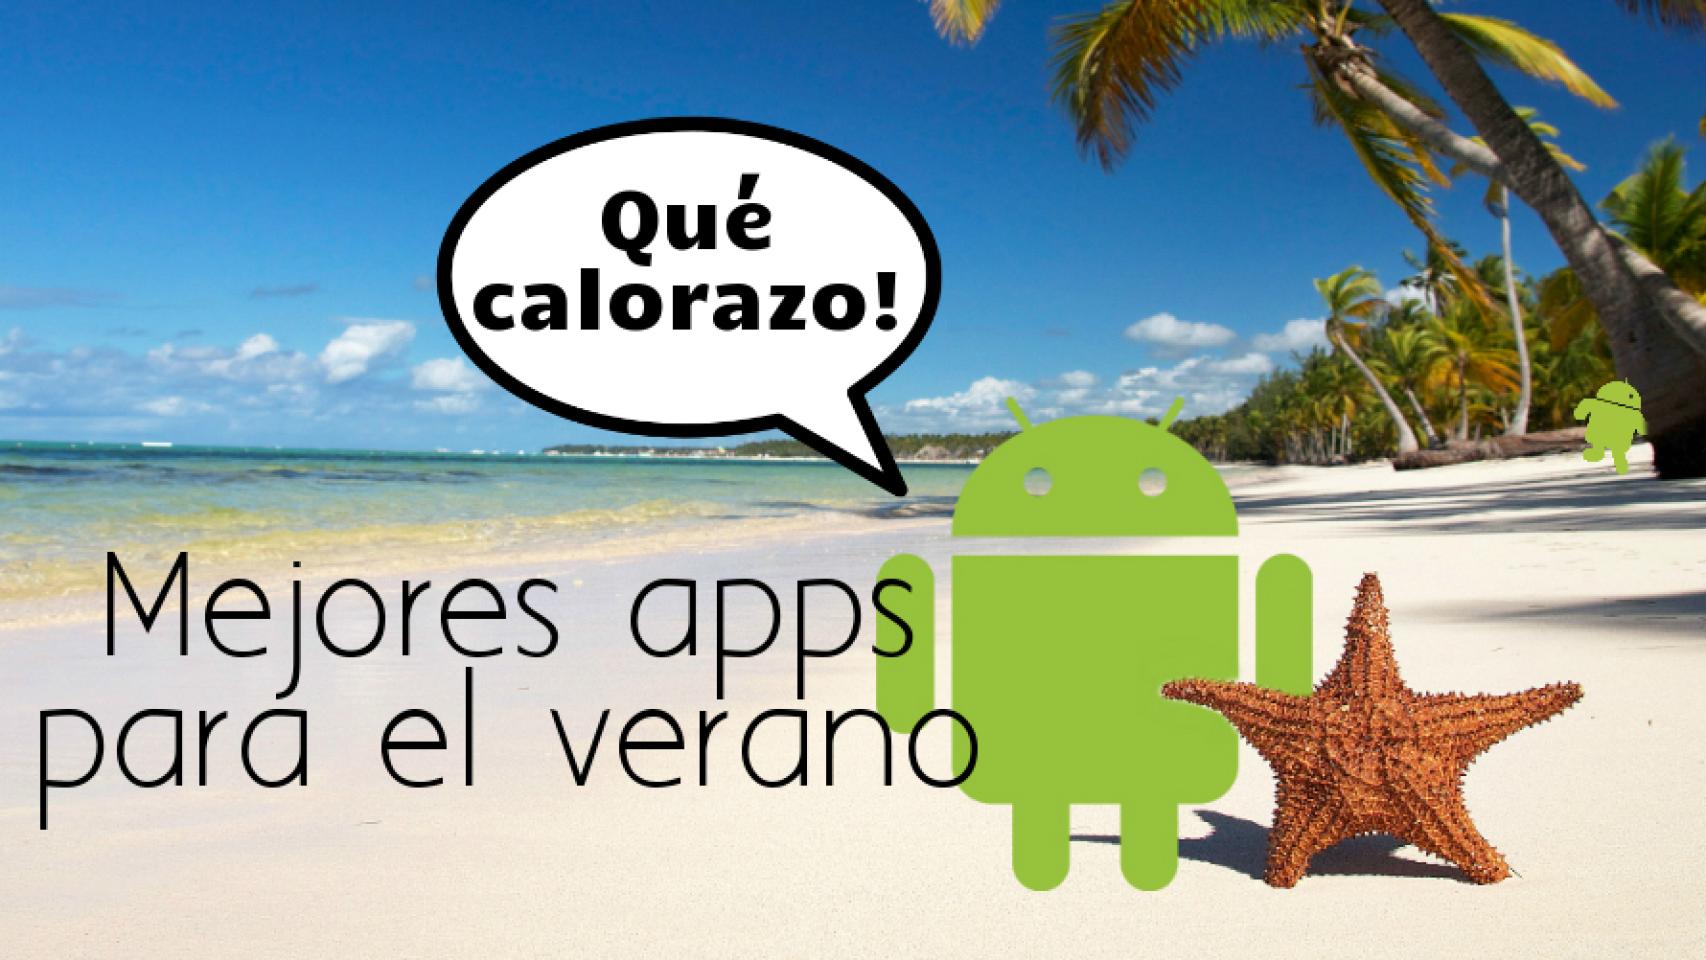 Las mejores apps para disfrutar del verano en la playa